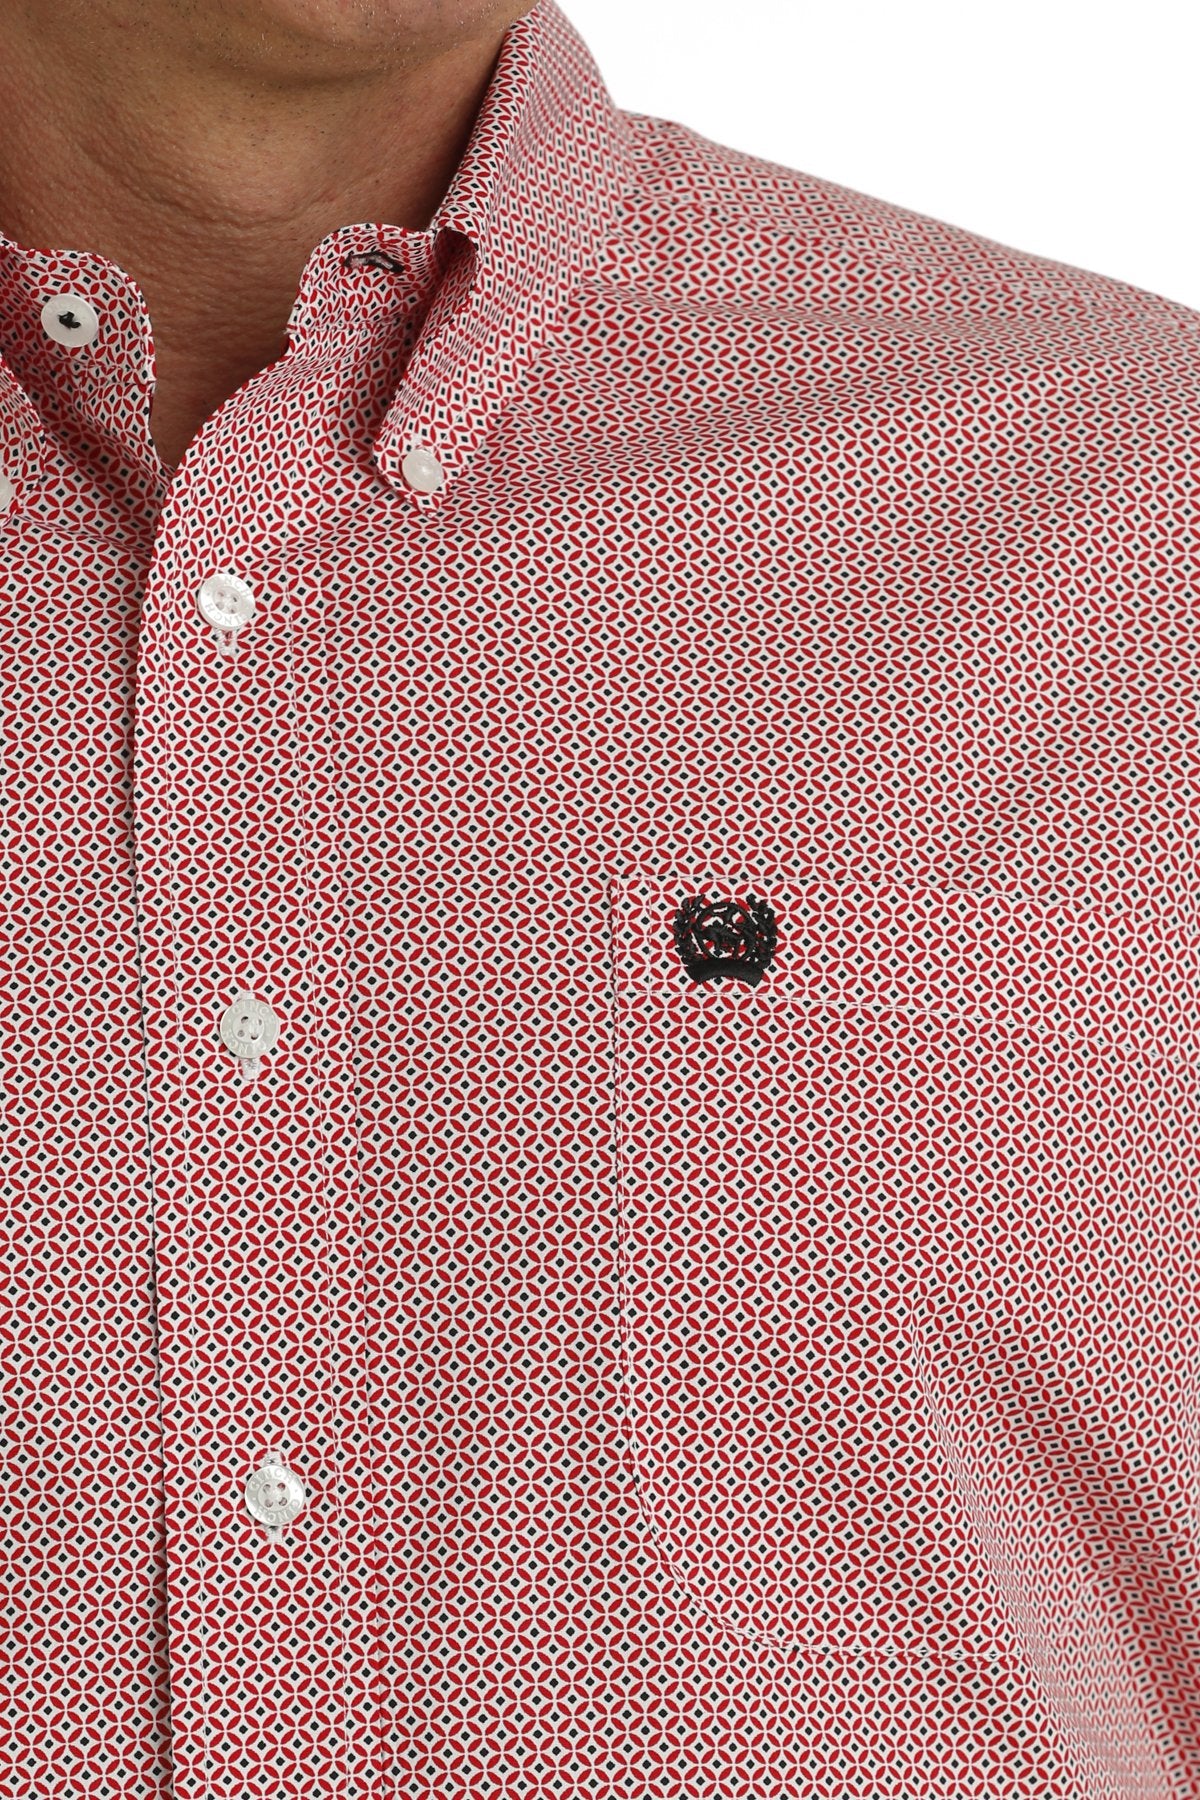 Cinch Geo Red Short Sleeve Men's Button Up Shirt